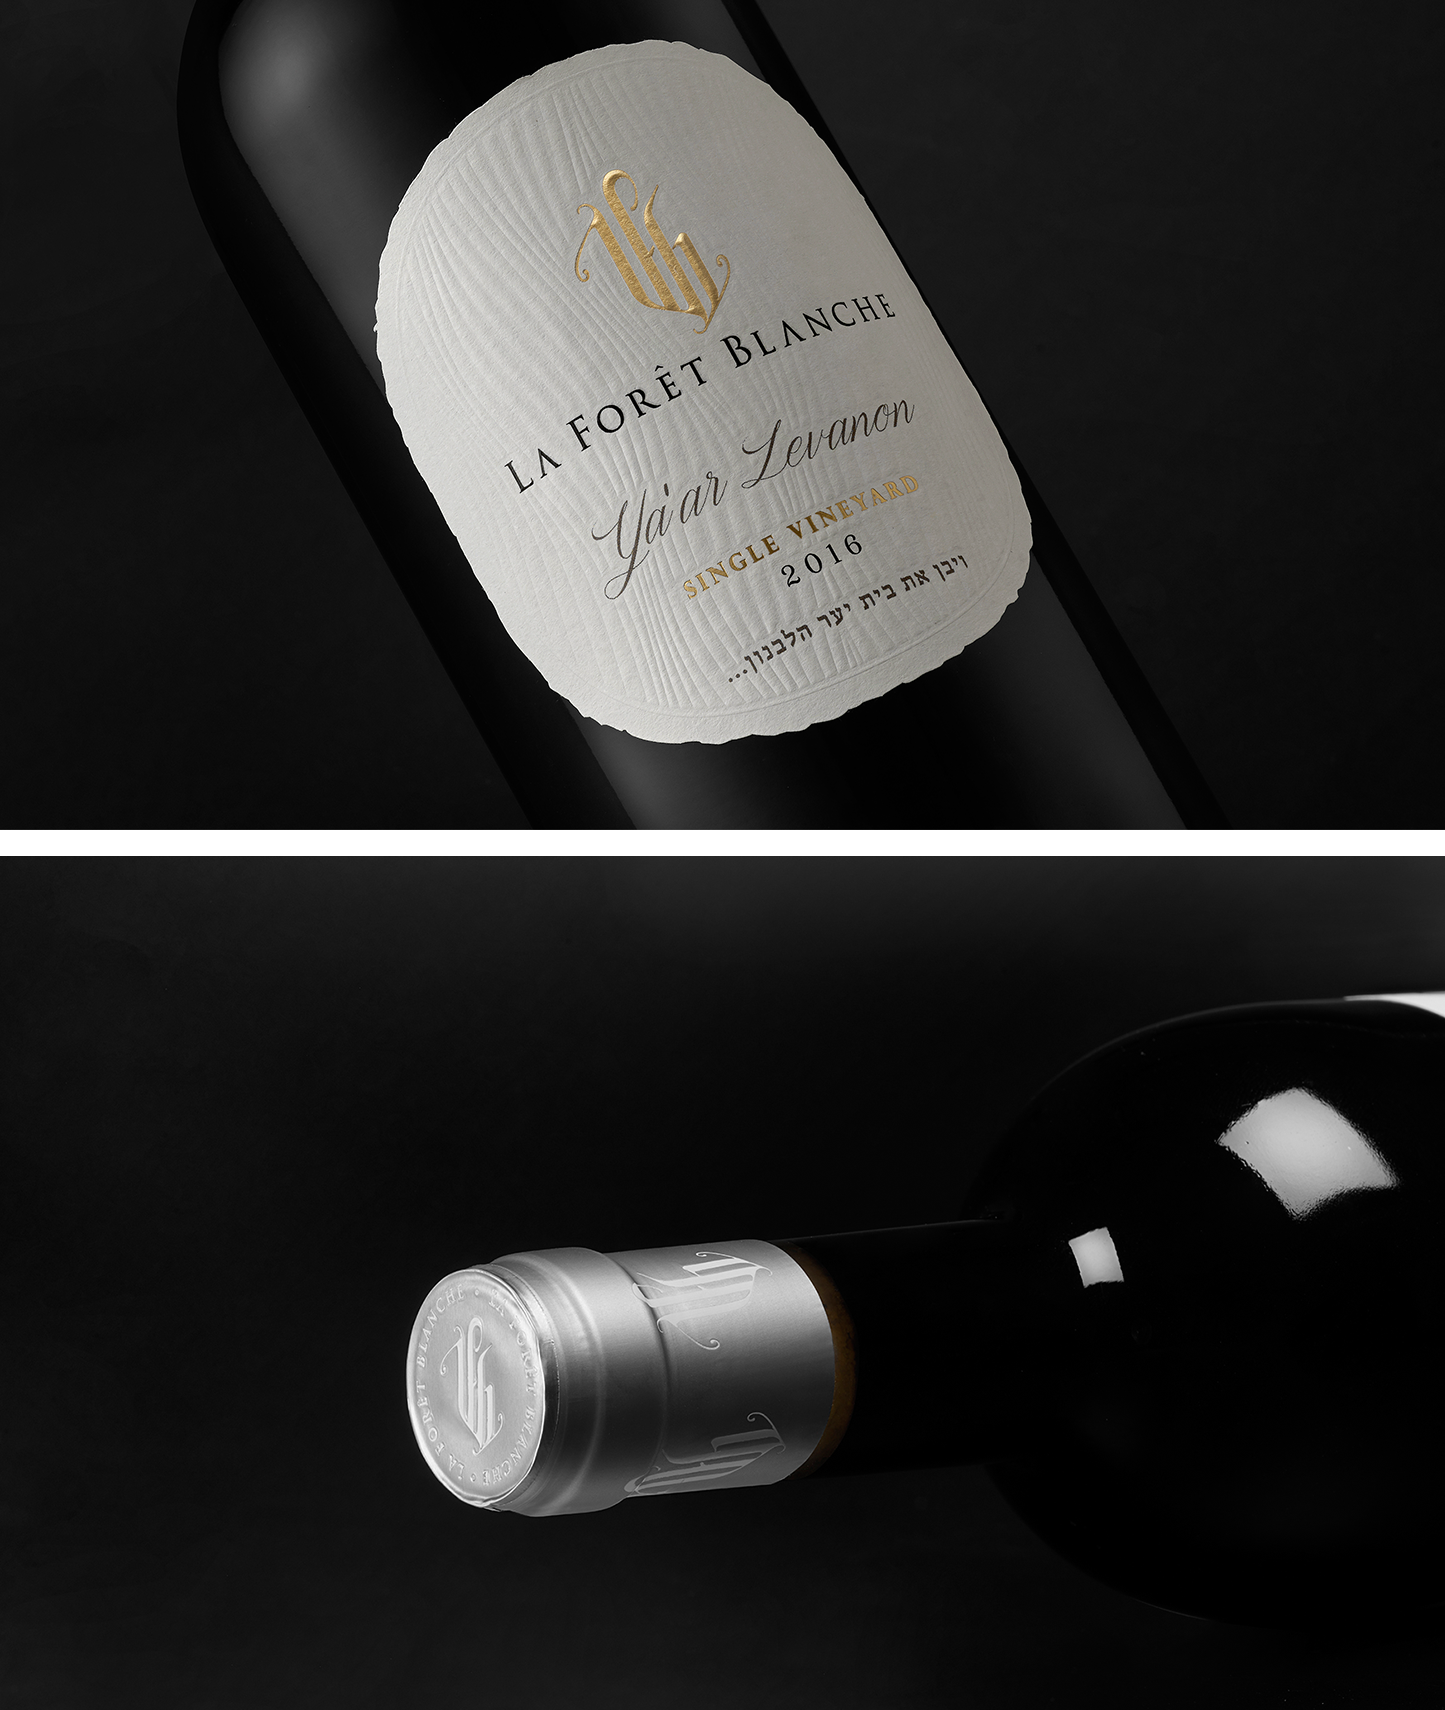 la foret blanche wine design